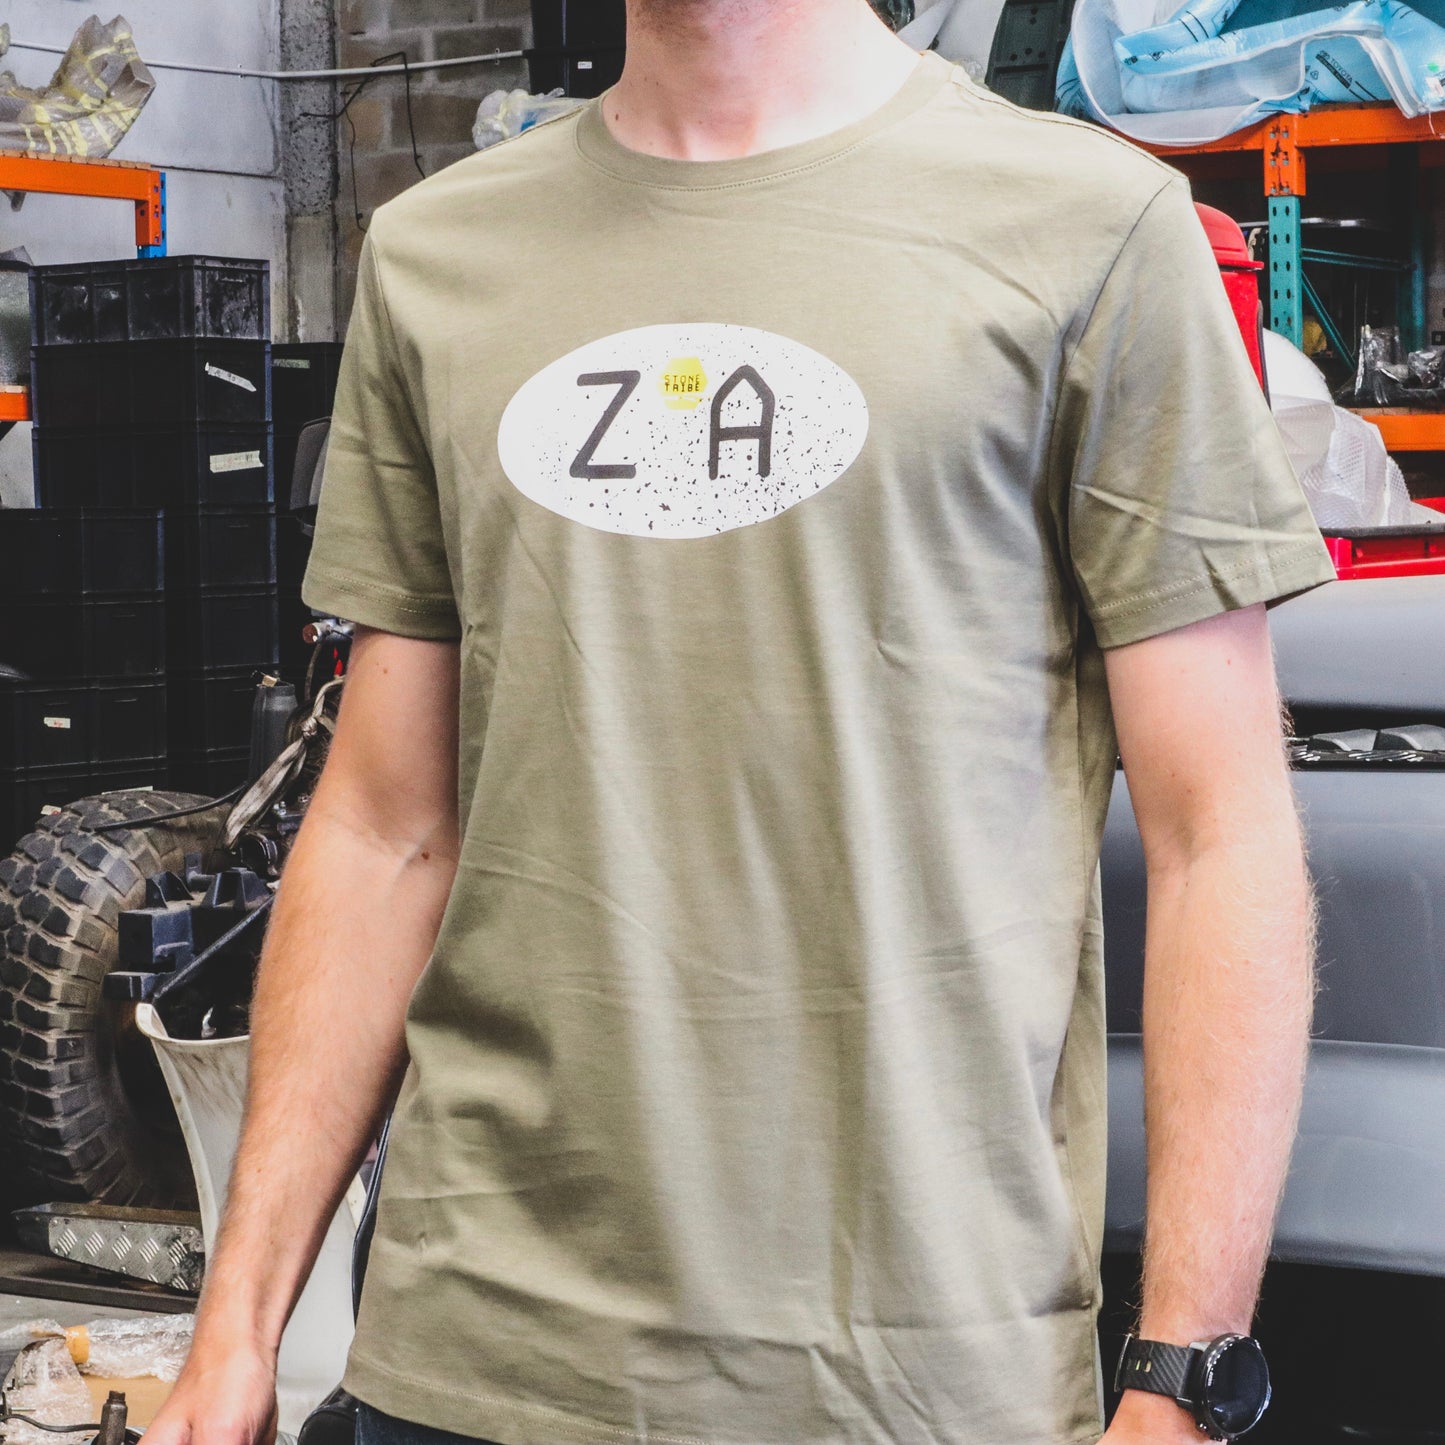 ZA T-Shirt Khaki